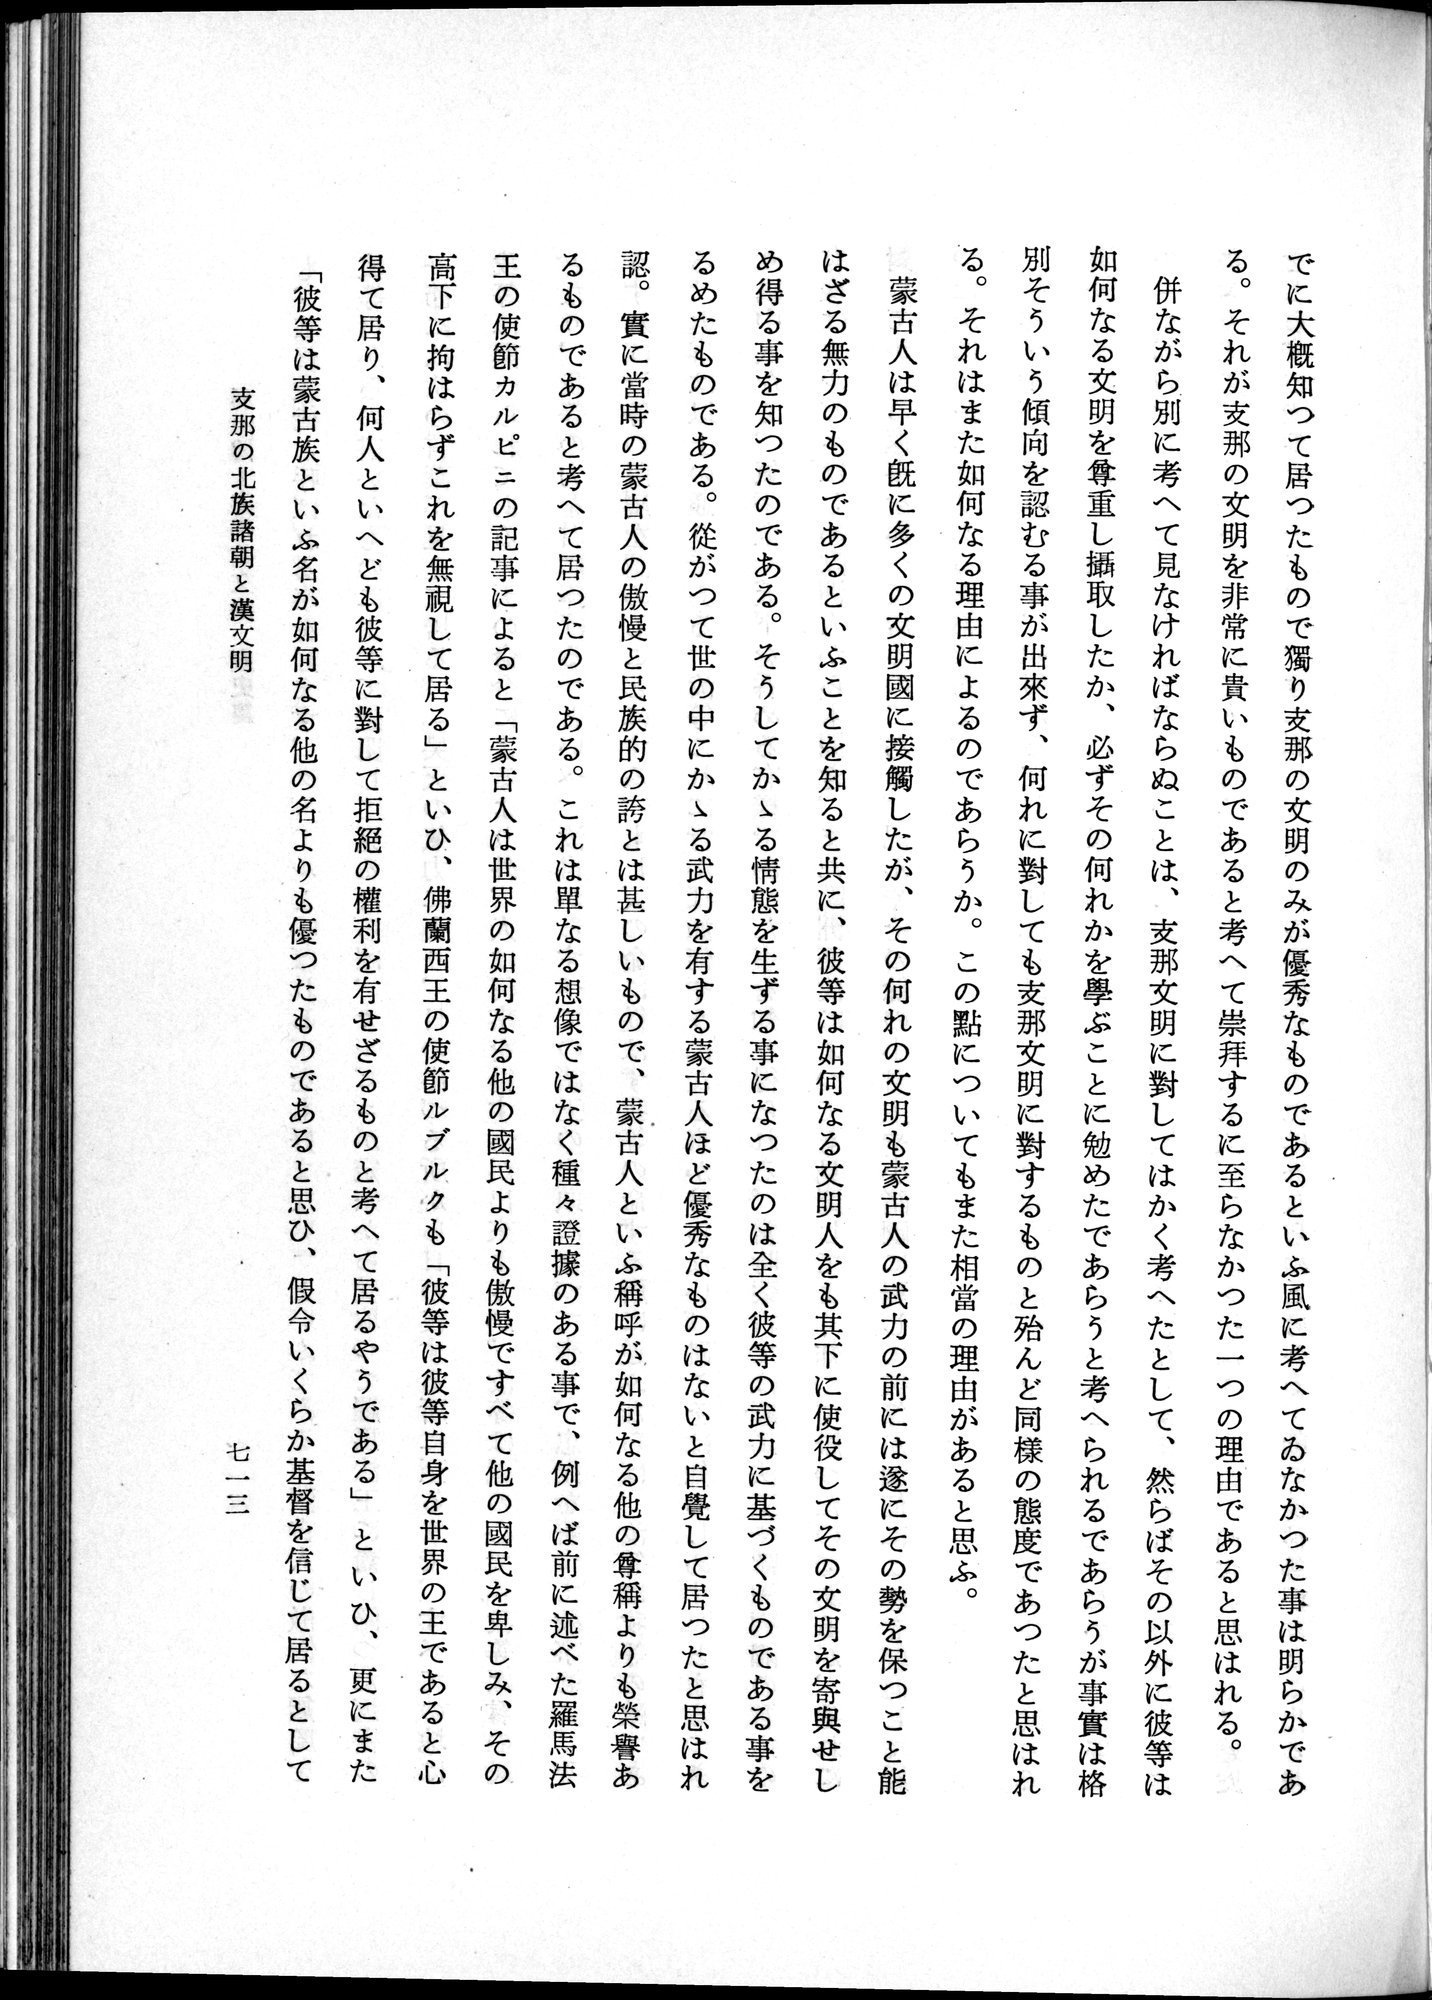 羽田博士史学論文集 : vol.1 / Page 751 (Grayscale High Resolution Image)